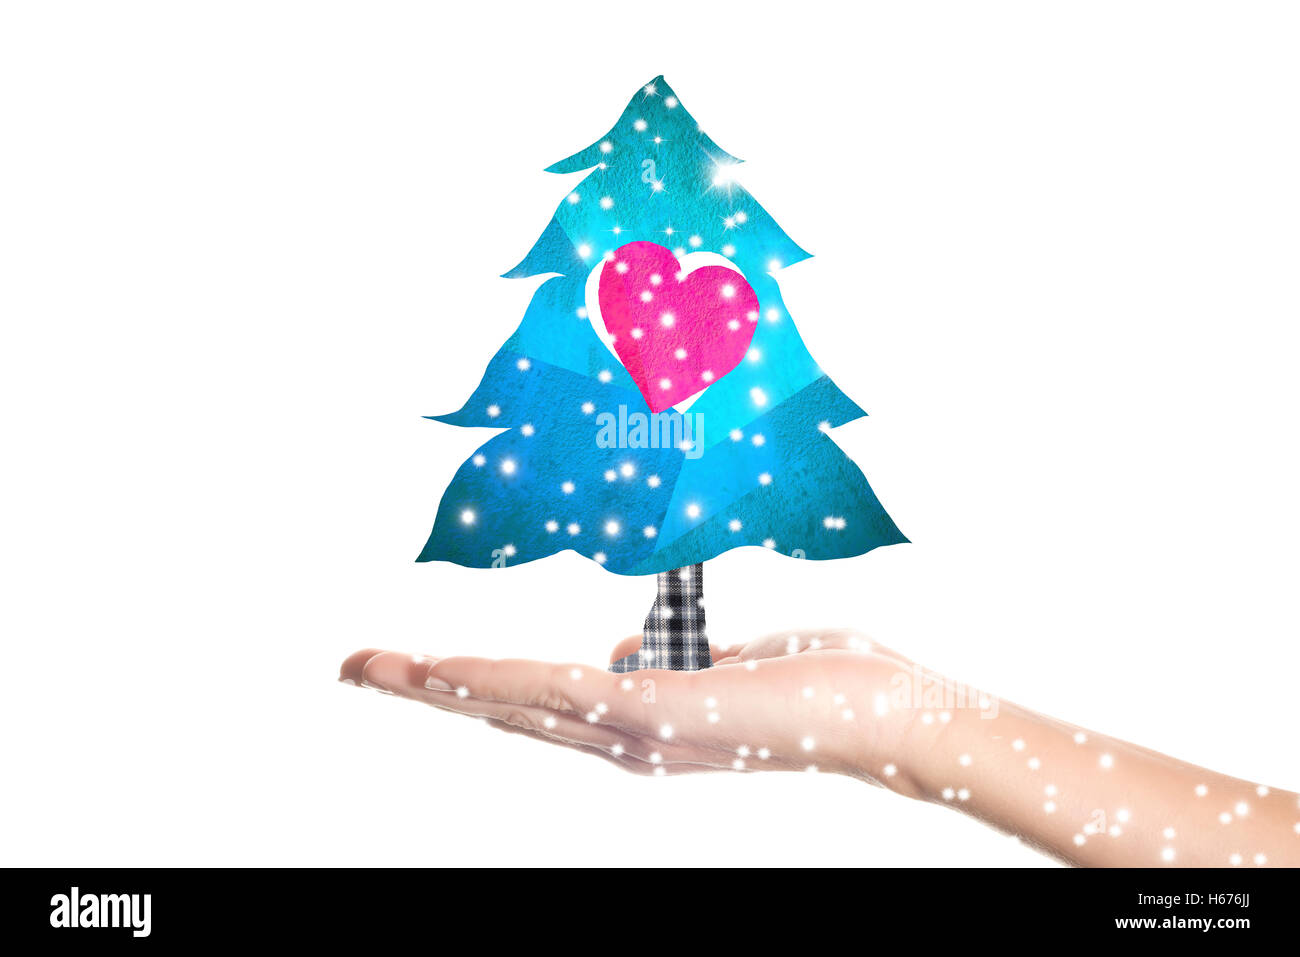 Weihnachtsgrußkarte, kindliche Zeichnung der Weihnachtsbaum in der einen Hand isoliert auf weißem Hintergrund Stockfoto